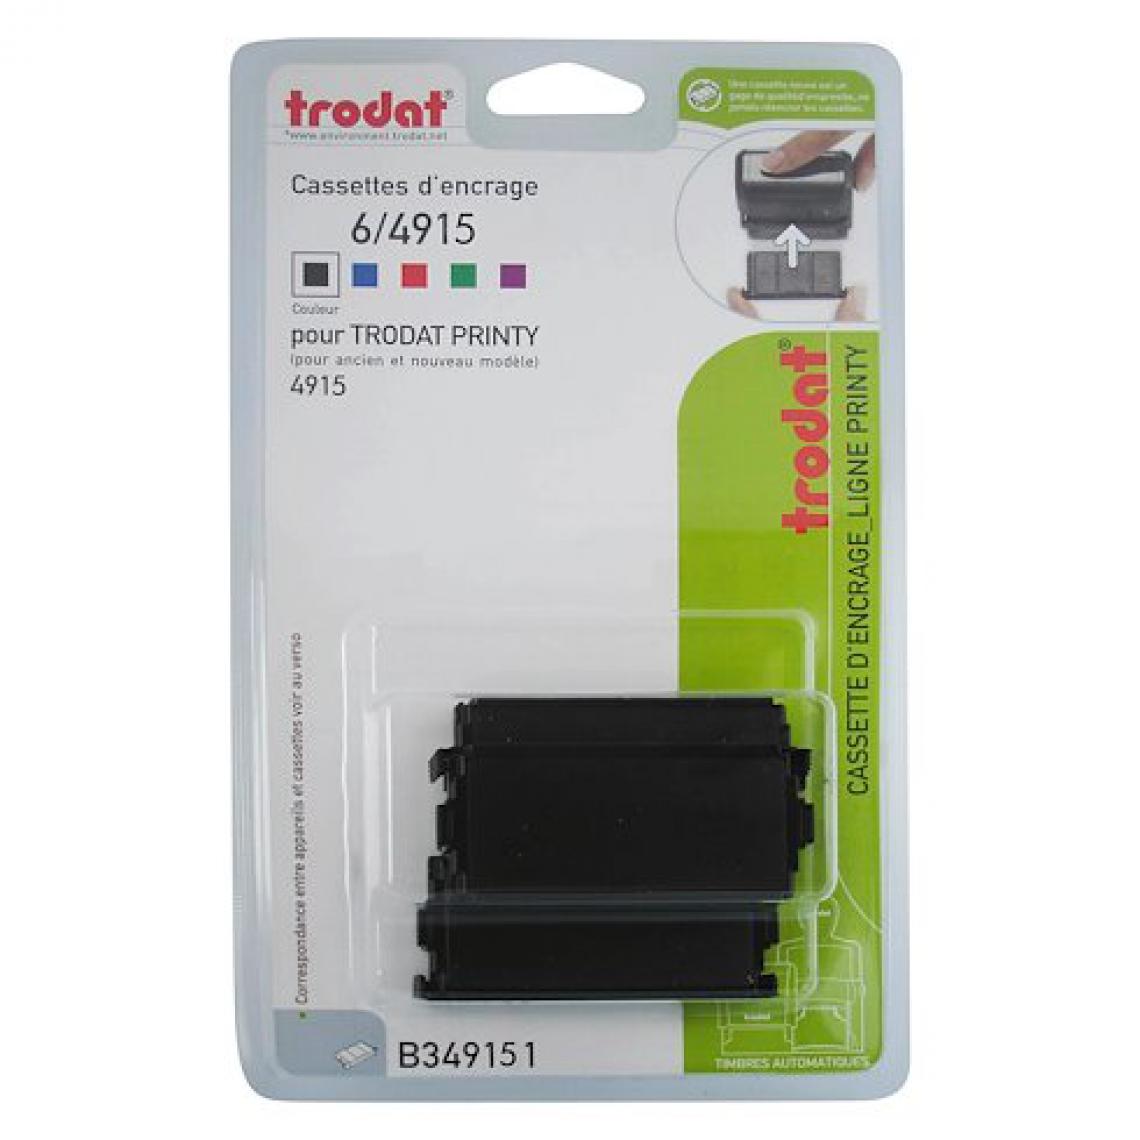 Trodat - Cassette d'encrage Trodat Printy 6/4915 - noire - Lot de 3 - Accessoires Bureau